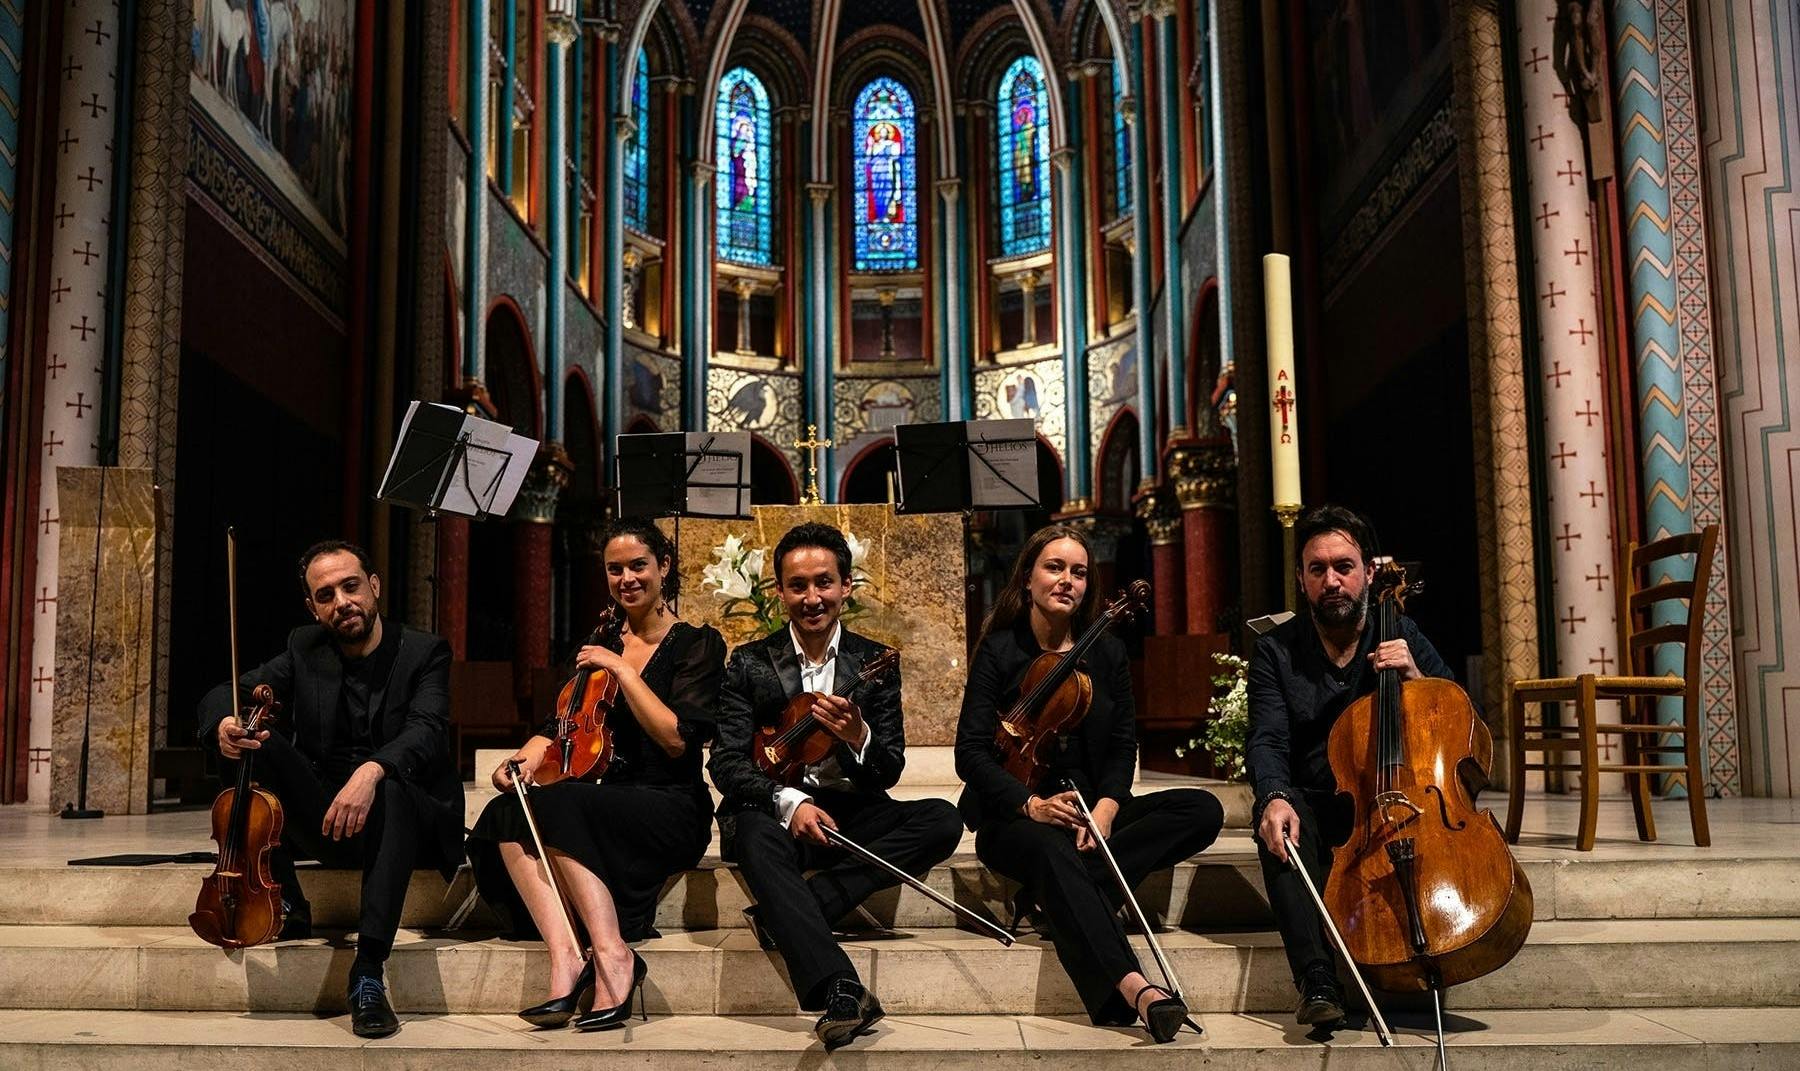 Bilety na koncerty muzyki klasycznej w kościele Saint-Germain-des-Prés